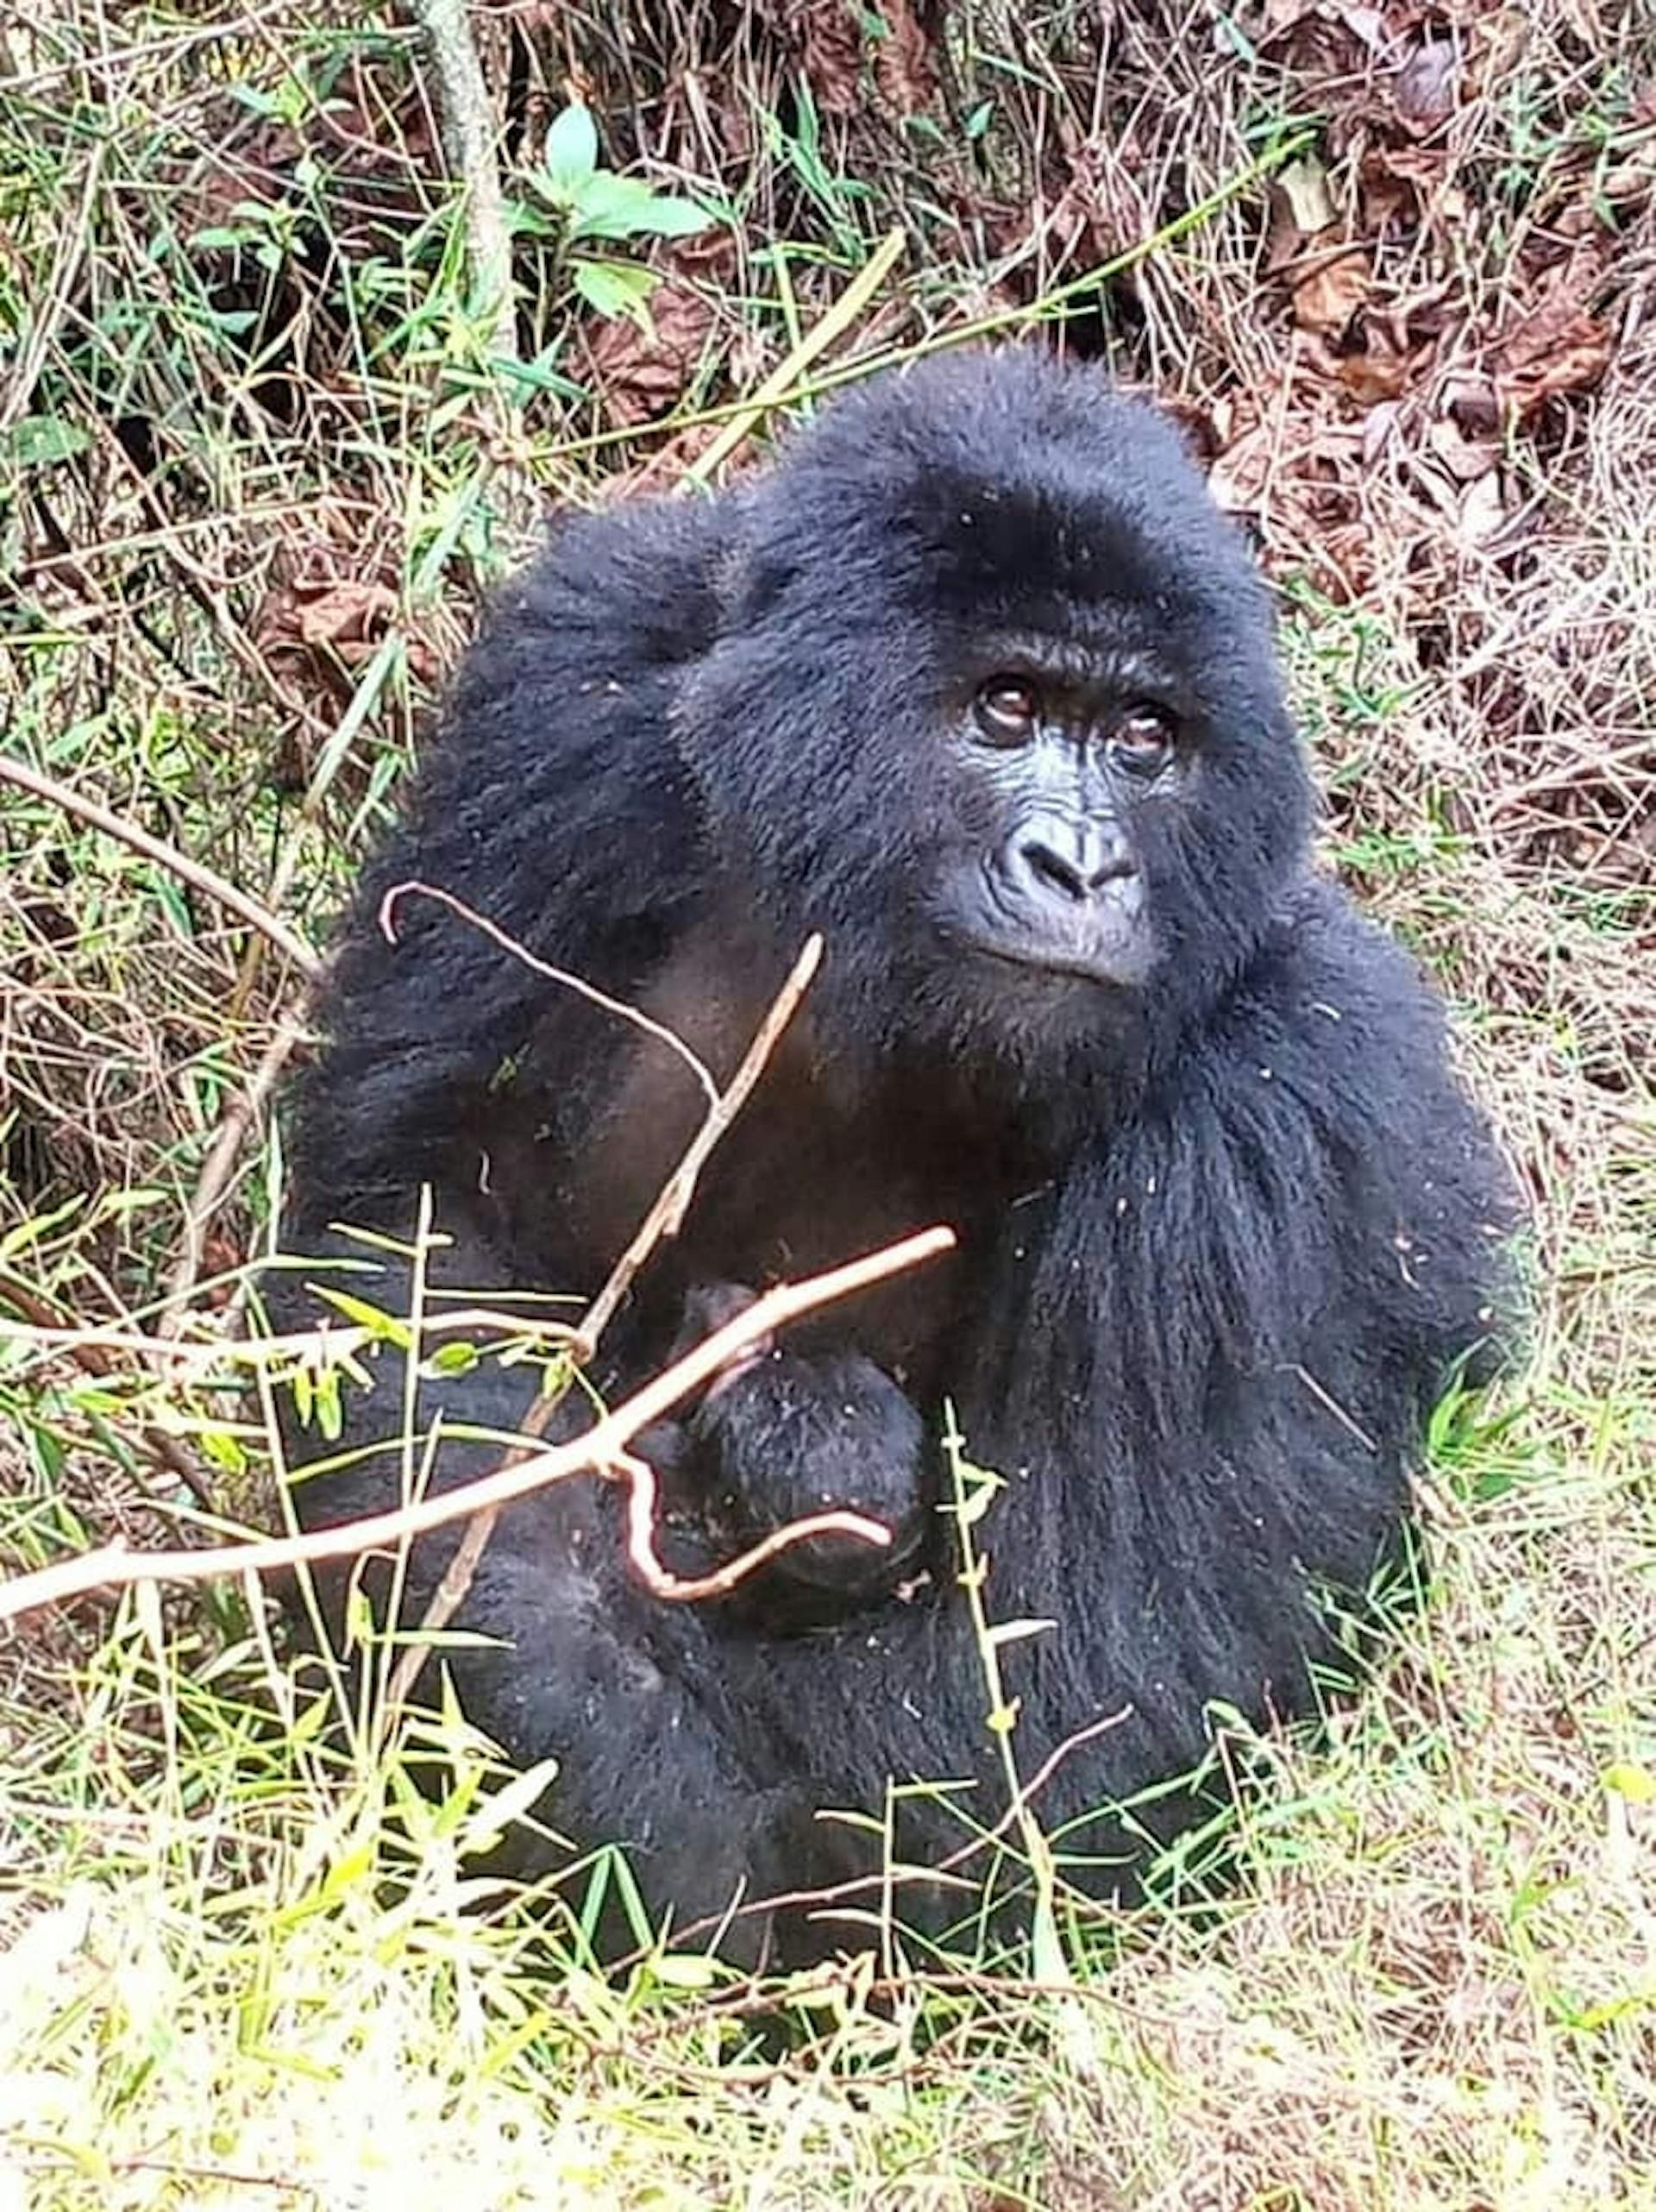 A gorilla holding her baby in Uganda